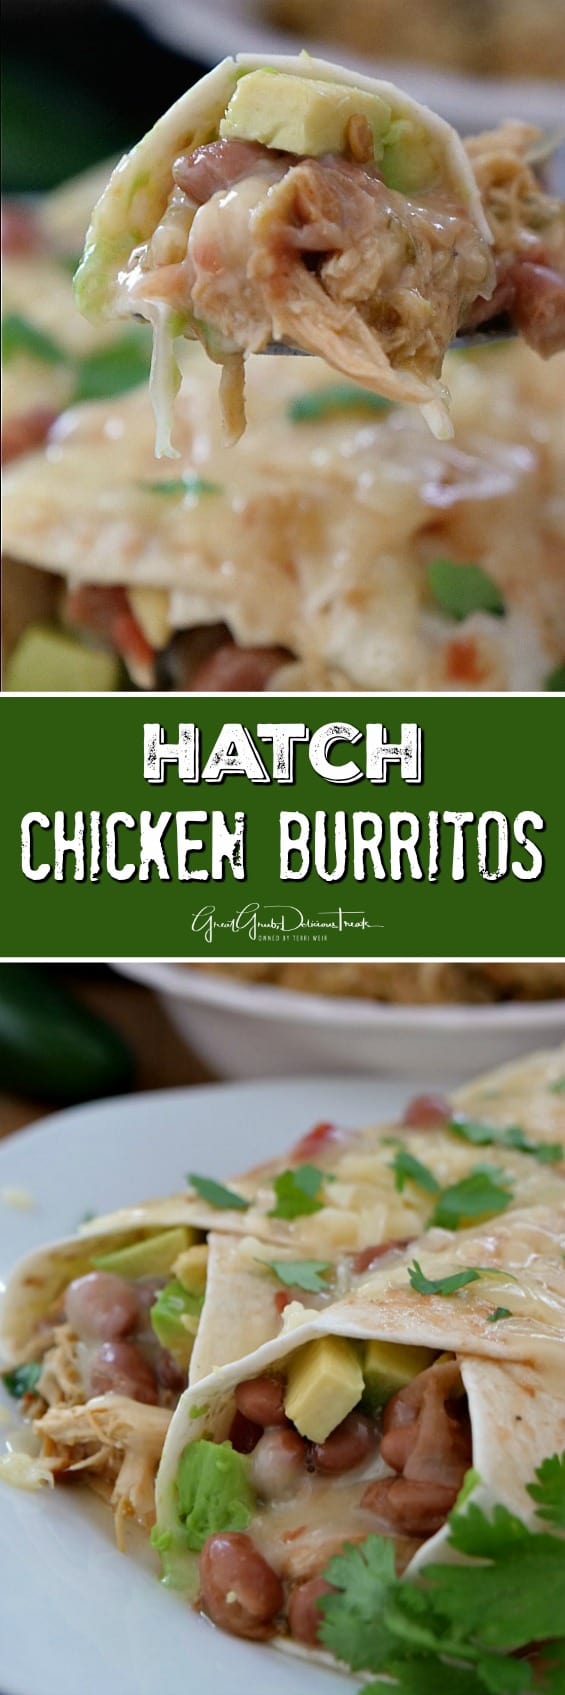 Hatch Chicken Burritos